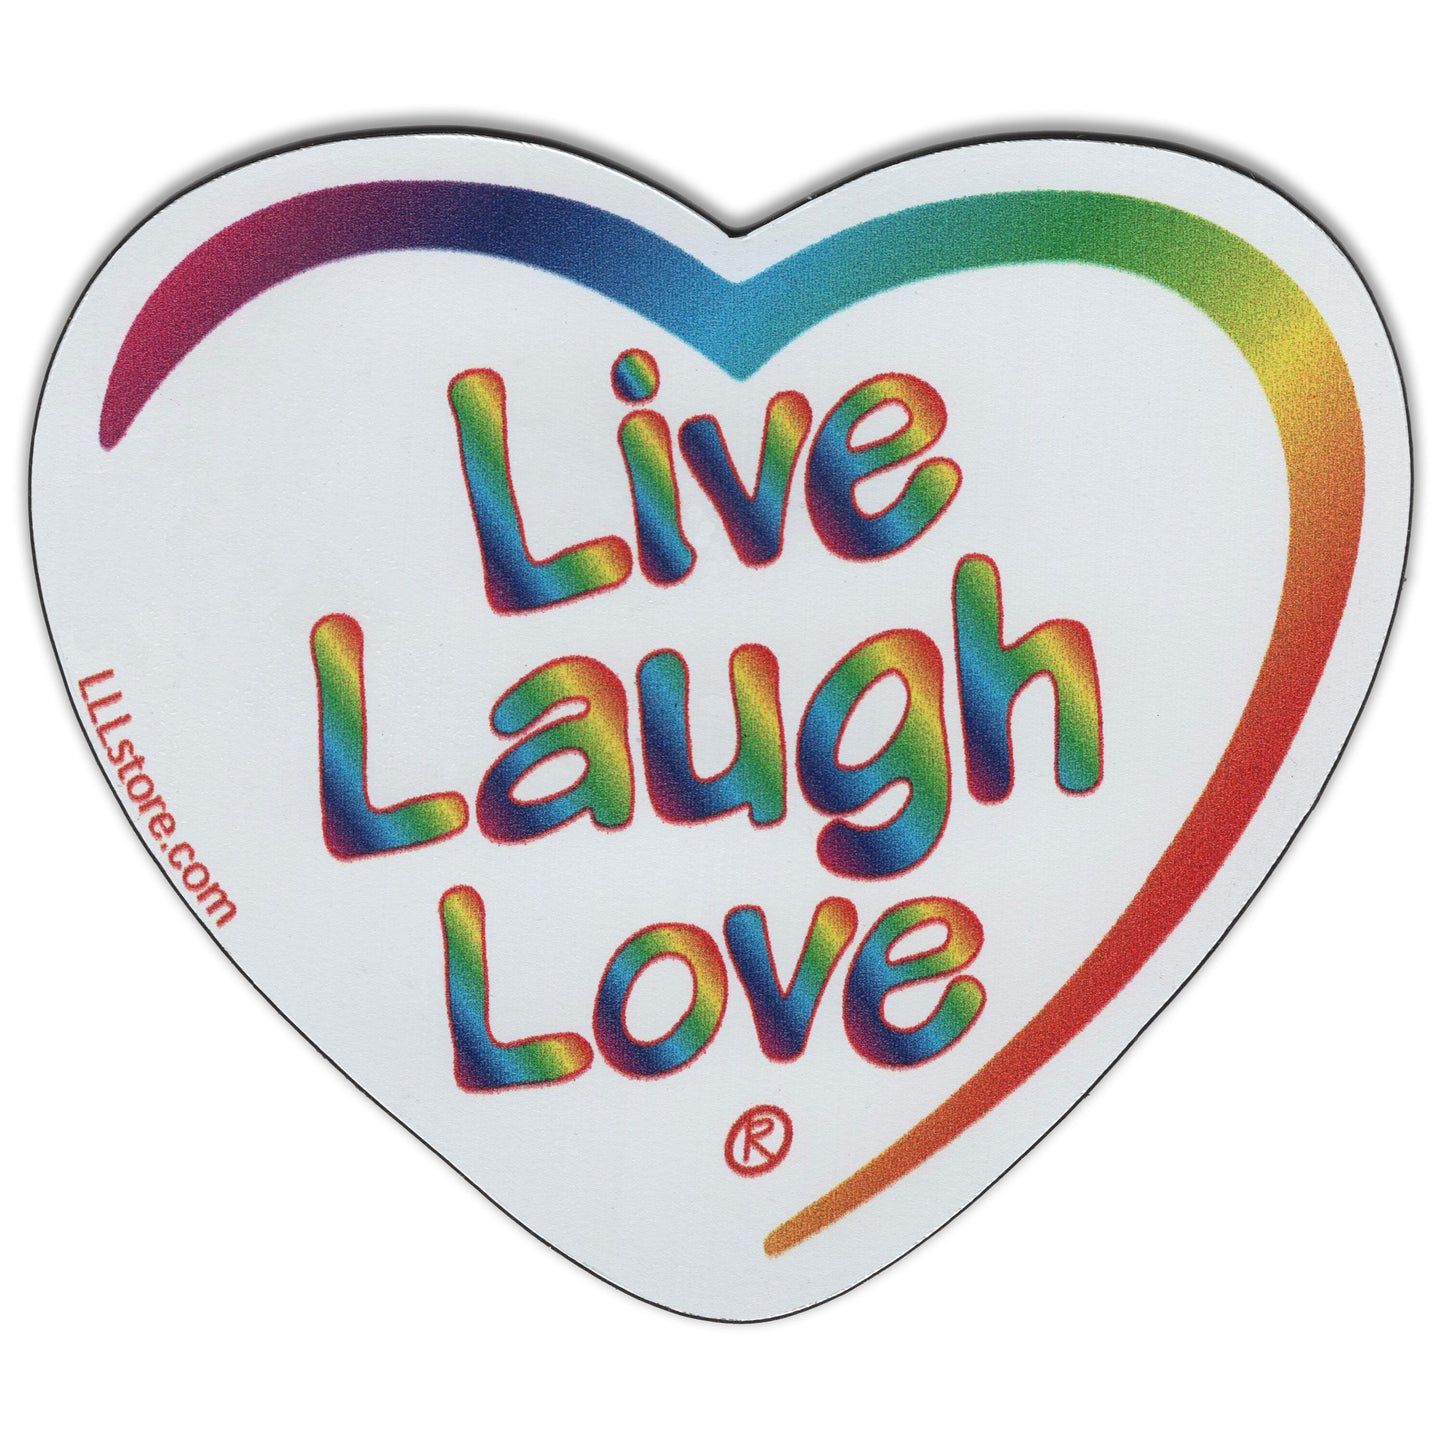 Live Laugh Love® Decorative Heart Shape Message Magnet - Tie Dye